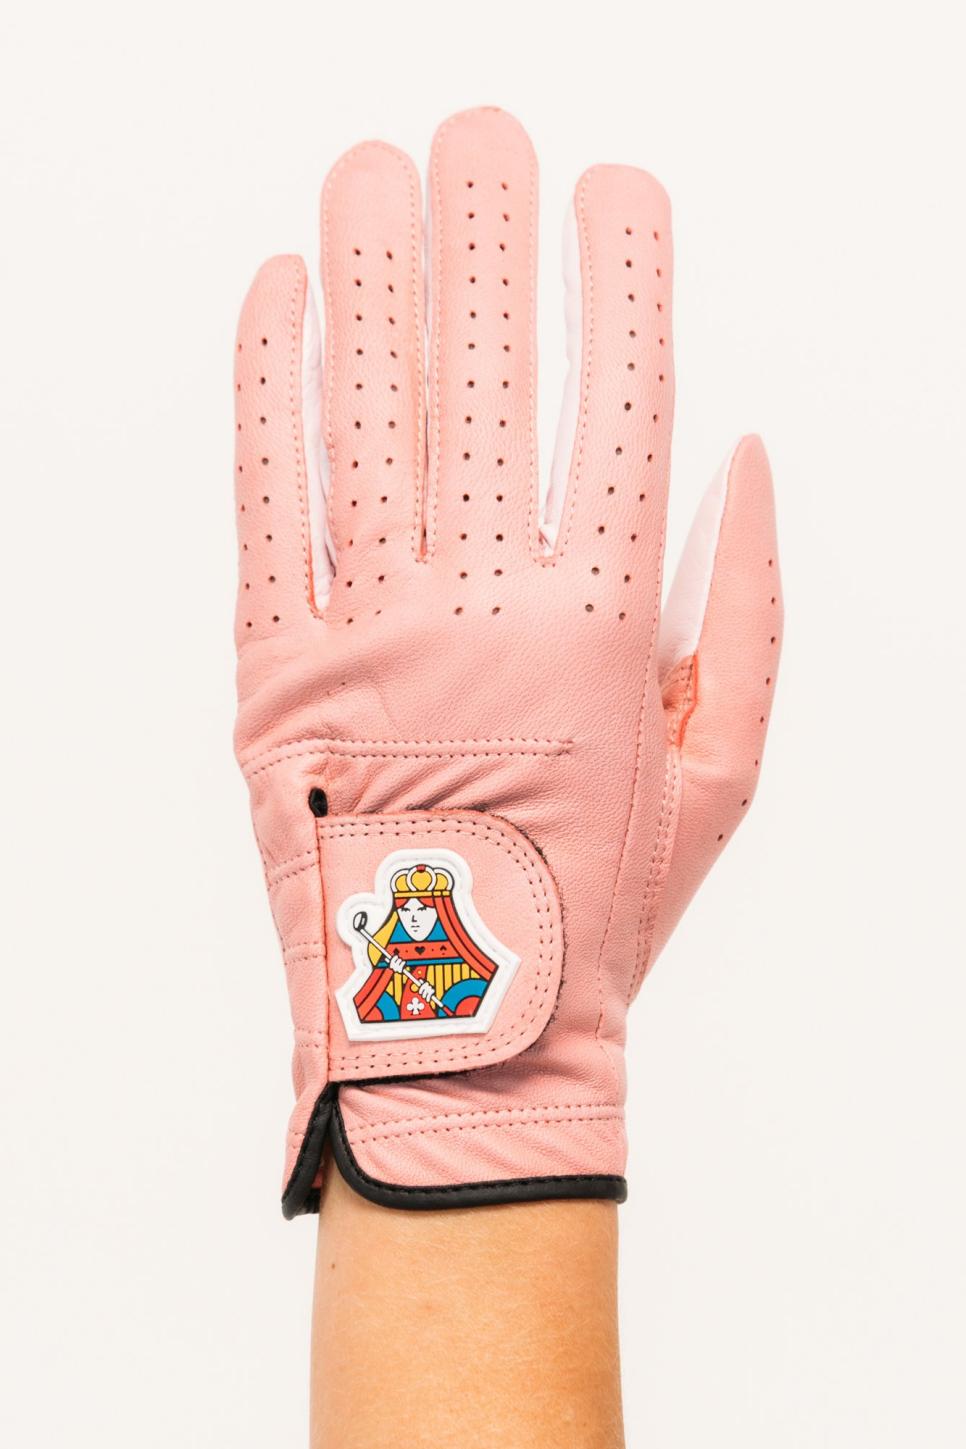 rx-forayforay-x-asher-queen-golf-glove---pink.jpeg